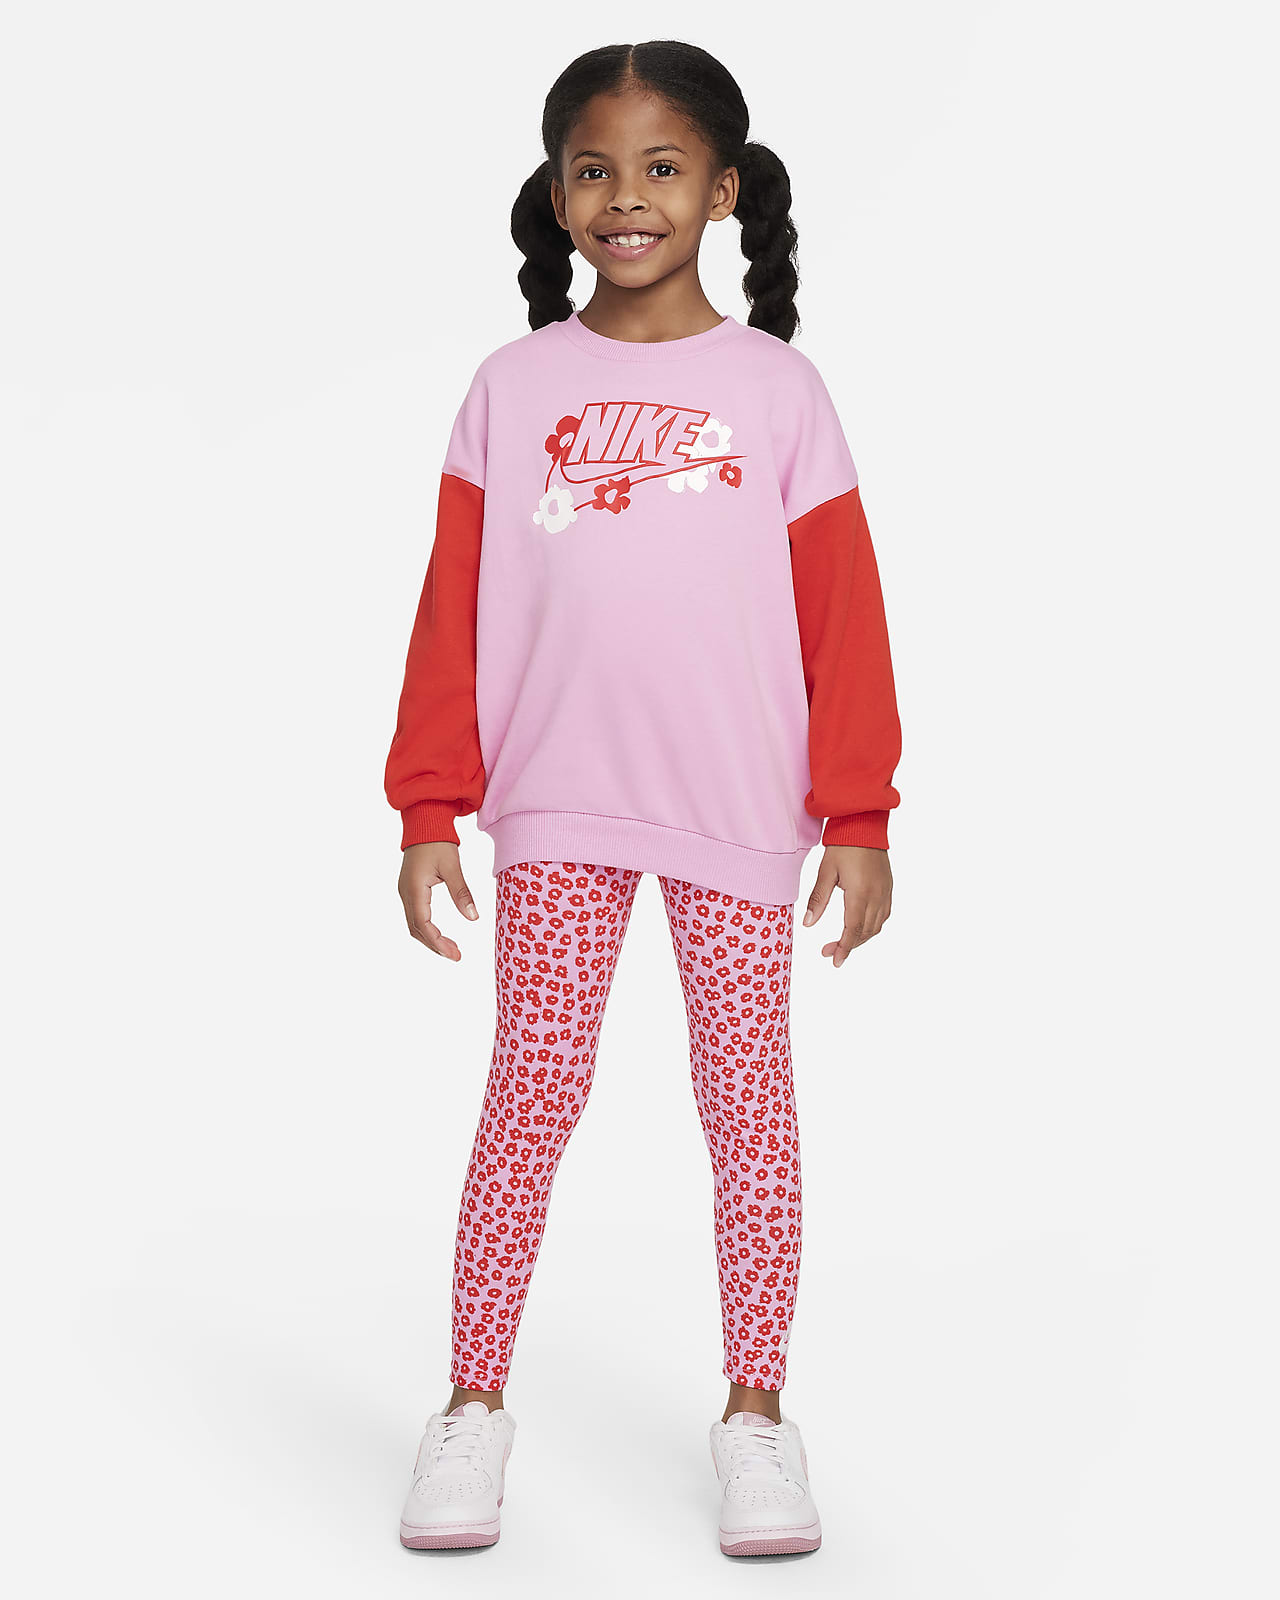 Ensemble haut et legging Nike Floral pour enfant